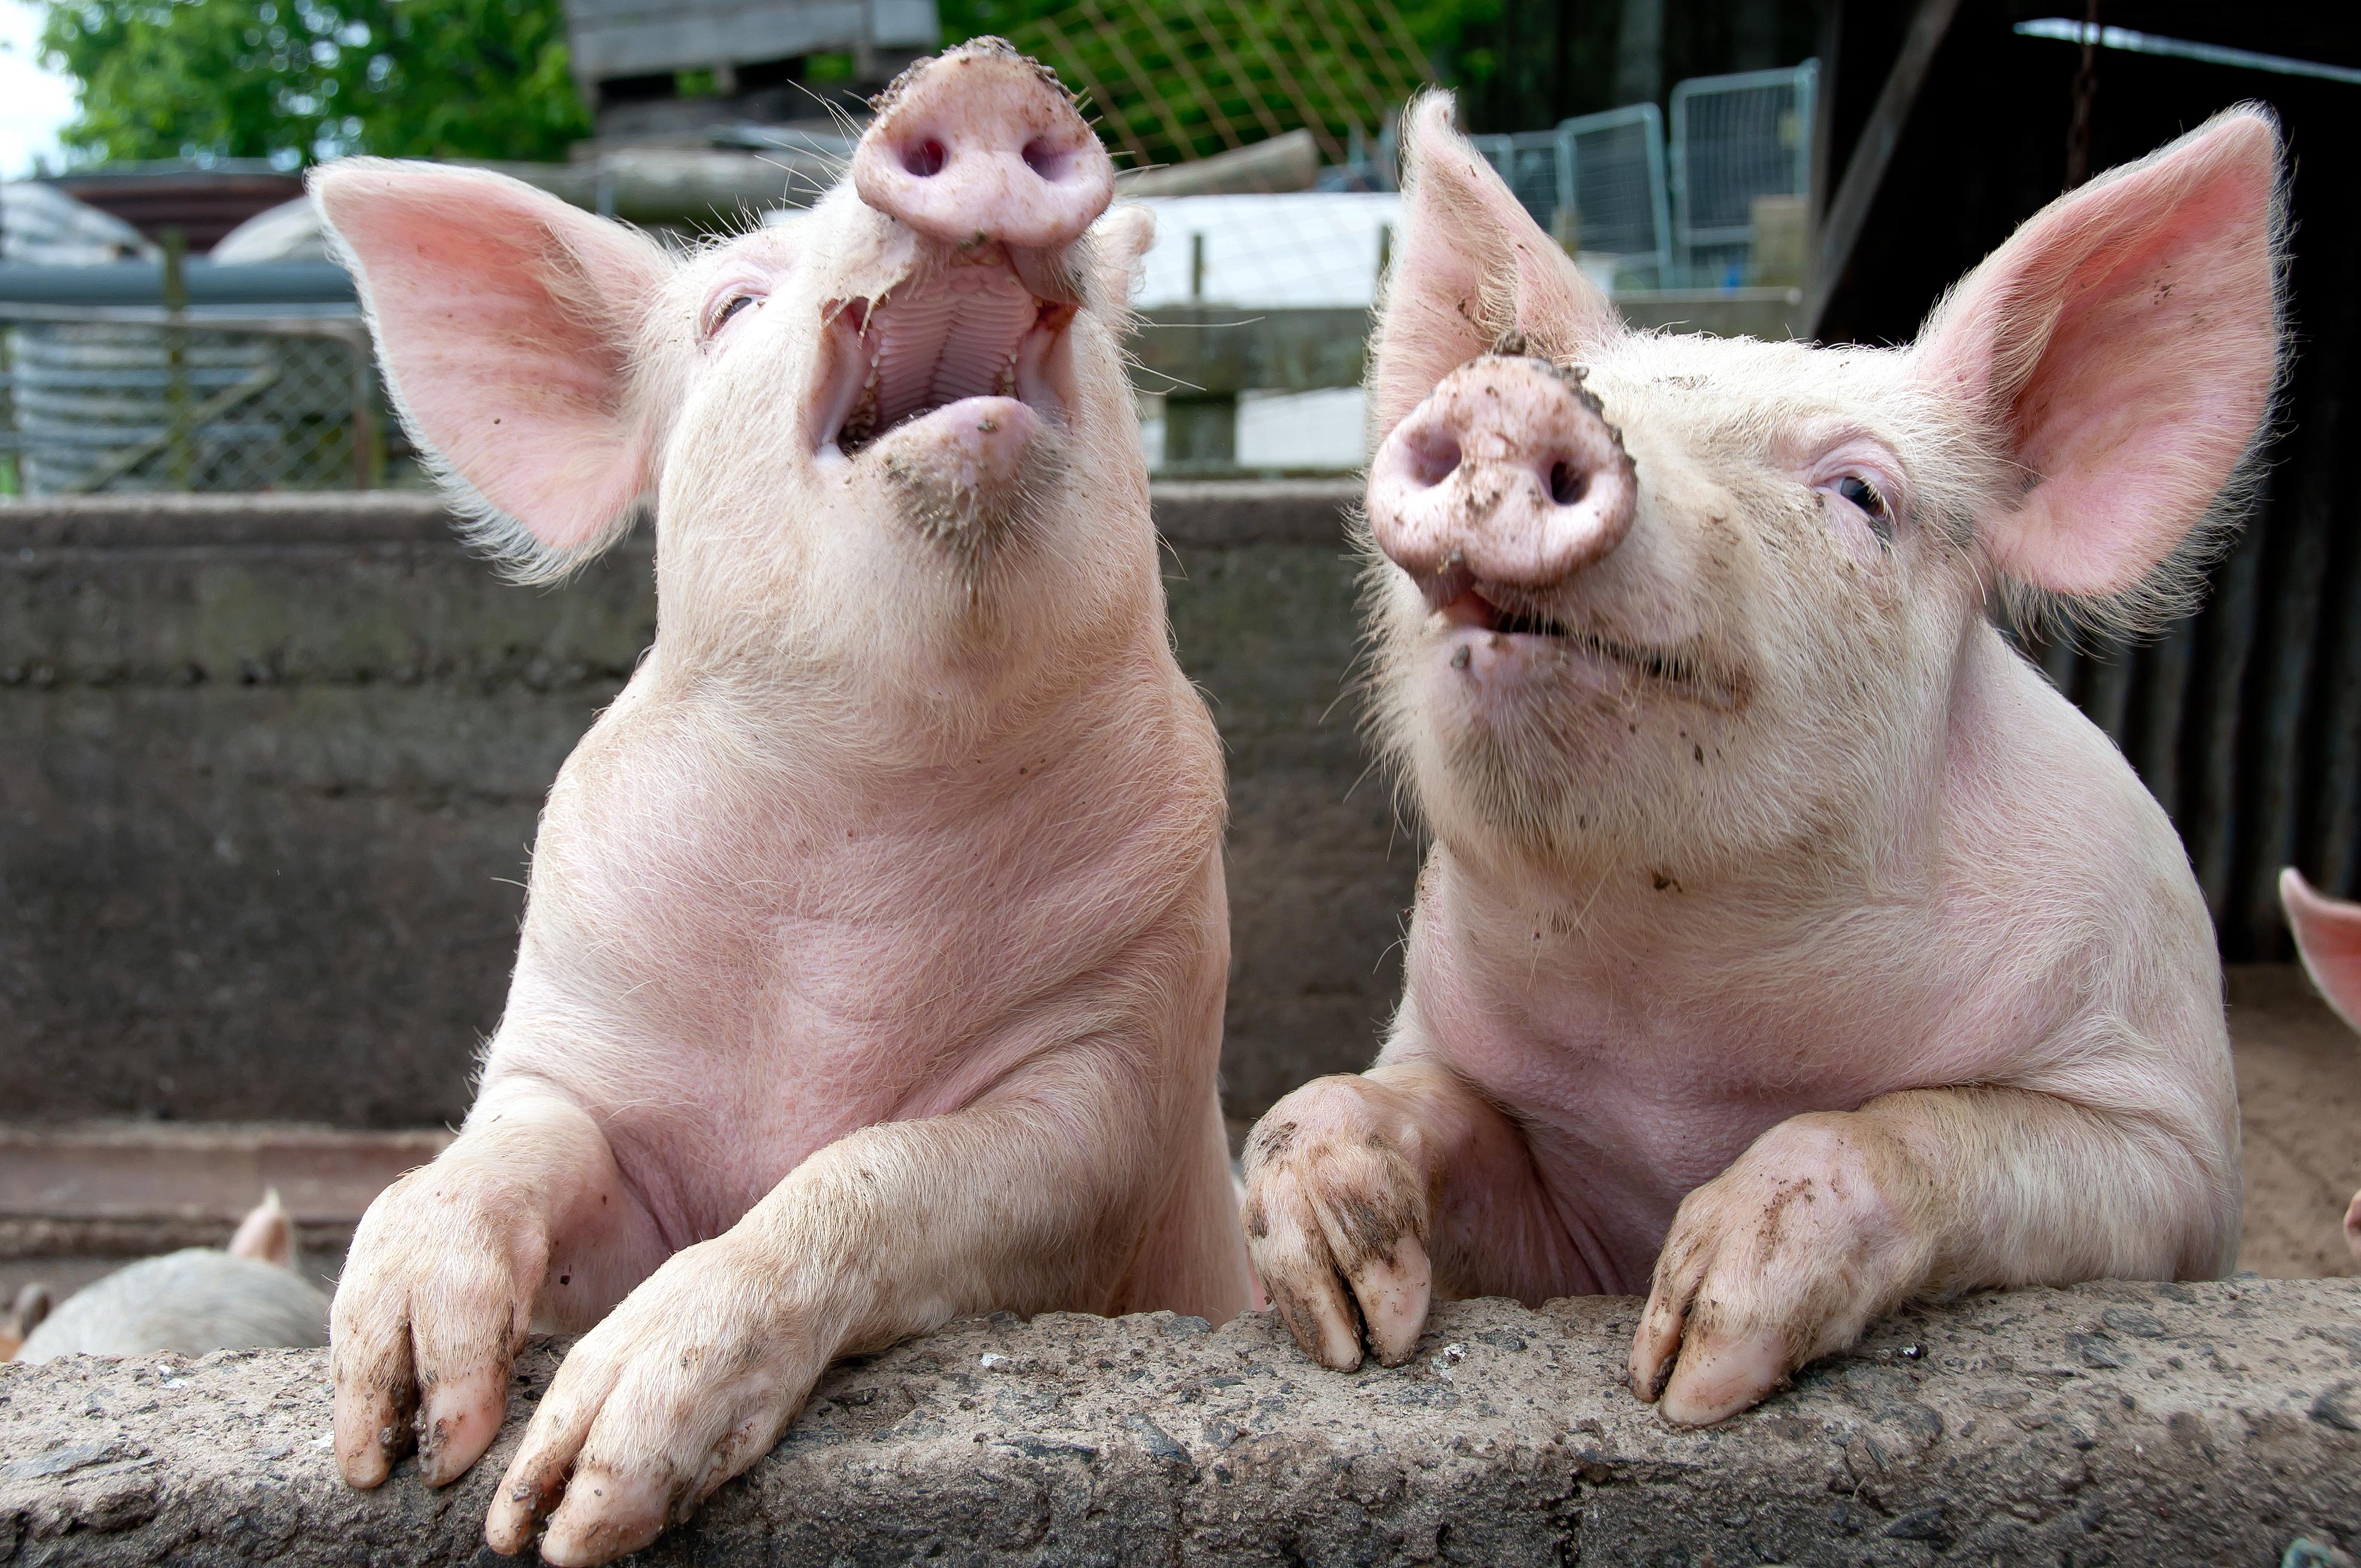 ... Og så løp grisen ut!Foto: Shutterstock/ janecat